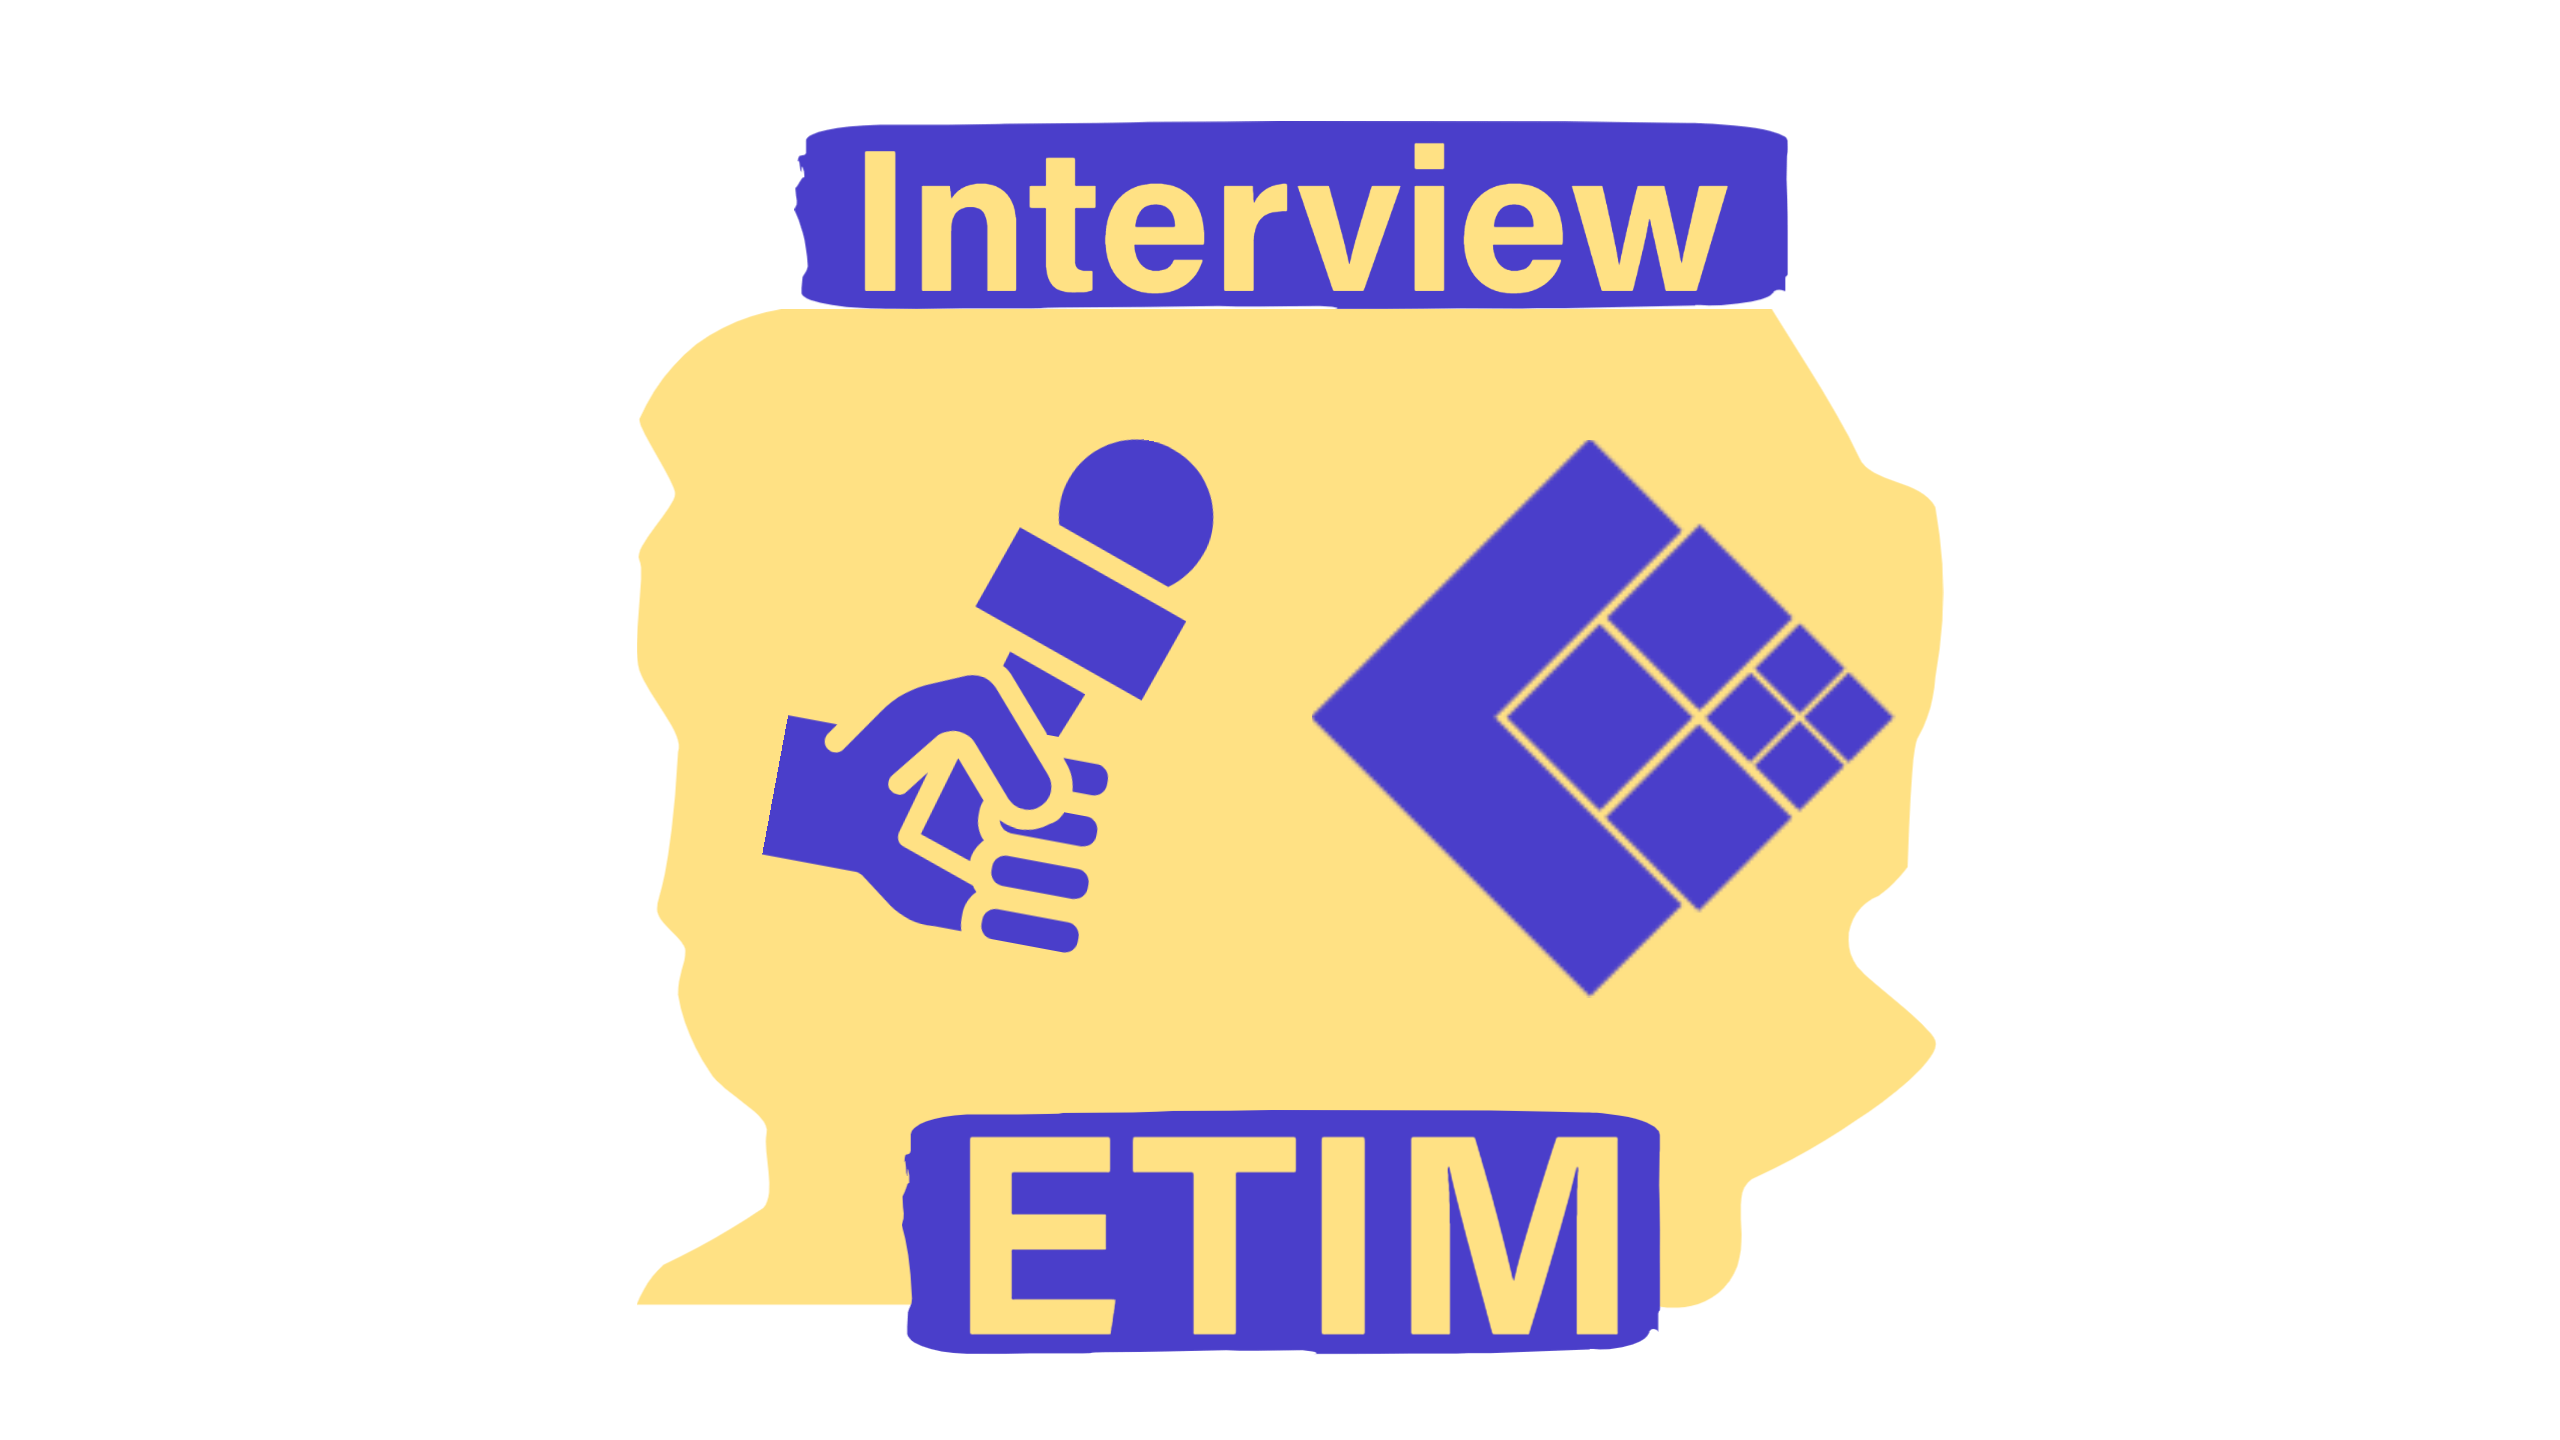 Découvrez l'ETIM grâce à l'interview de Daiteo